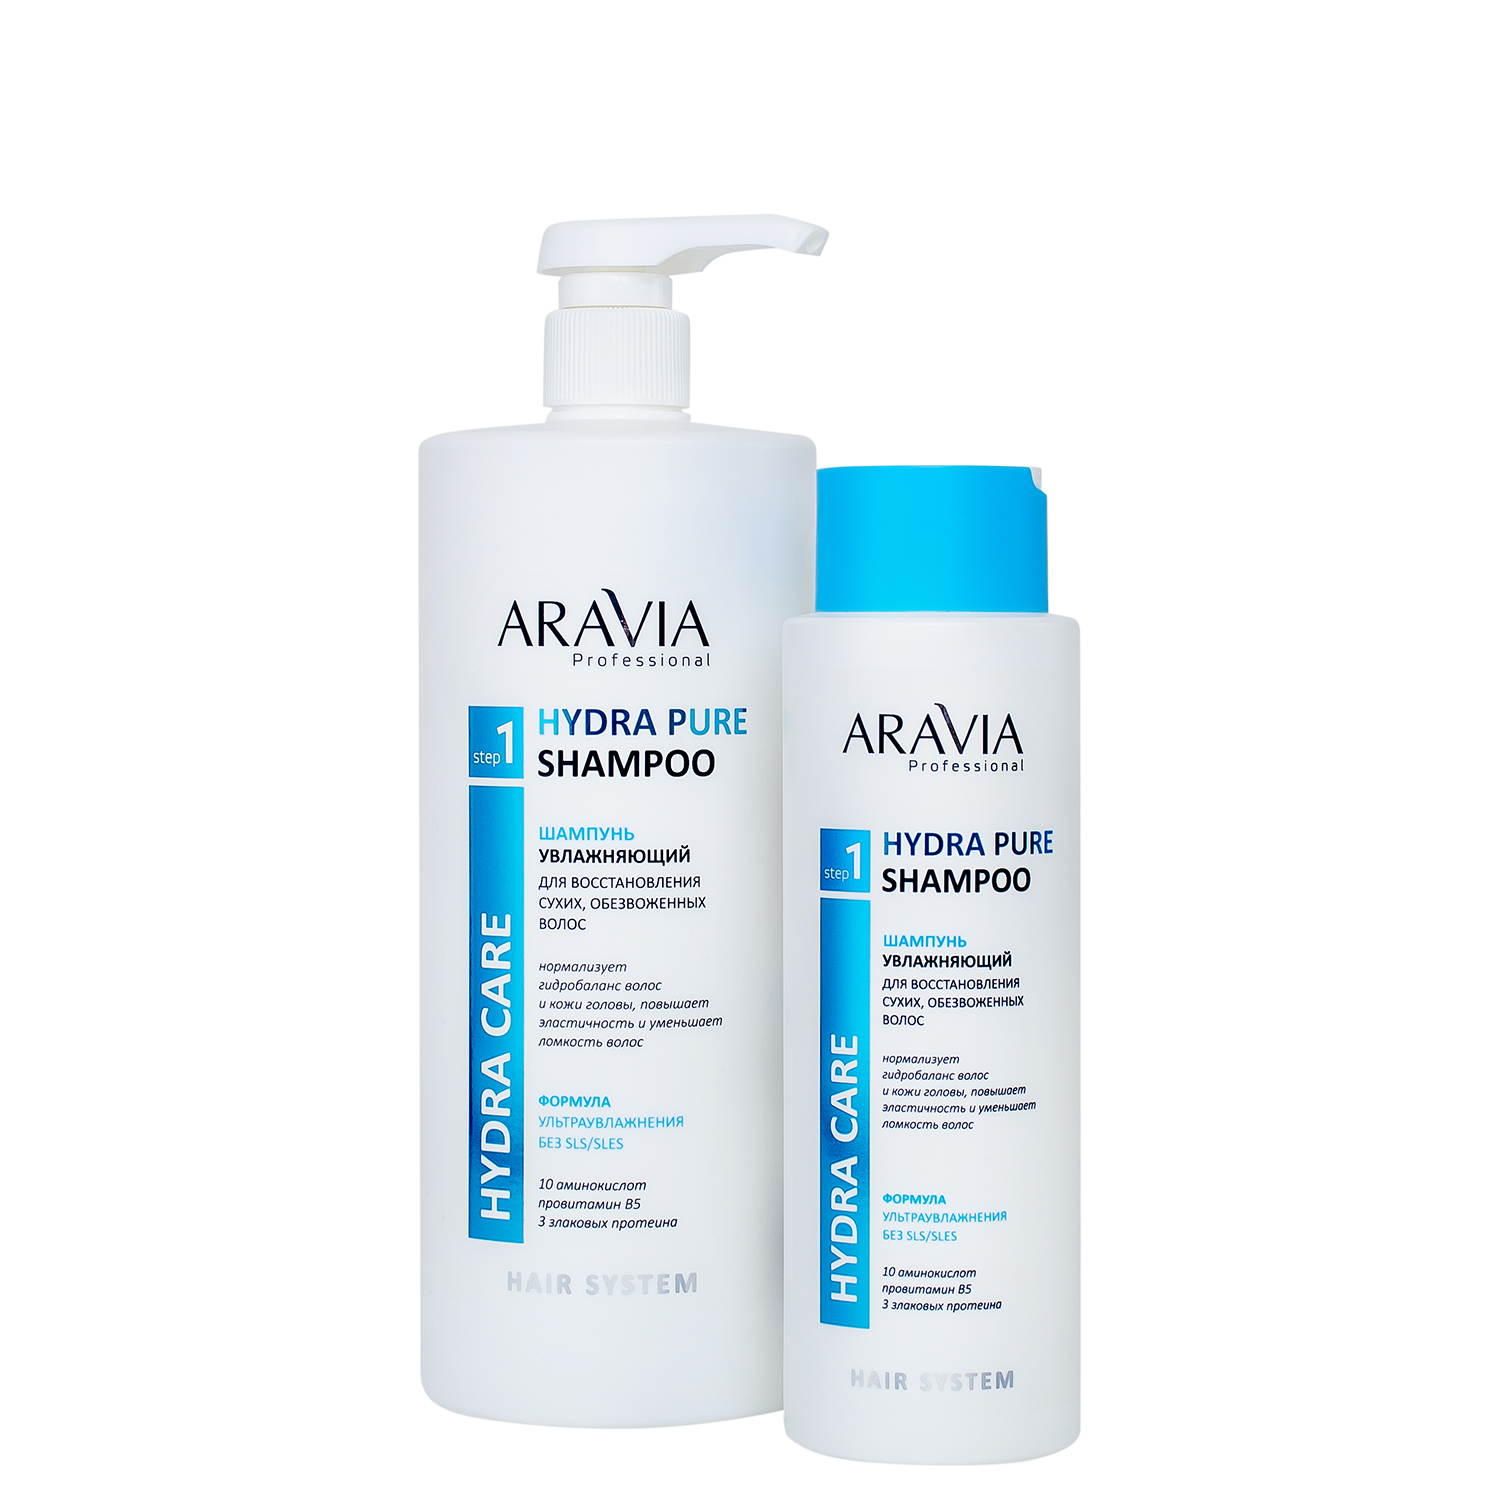 Шампунь увлажняющий для восстановления сухих, обезвоженных волос Hydra Pure Shampoo, 1000 мл, ARAVIA Professional